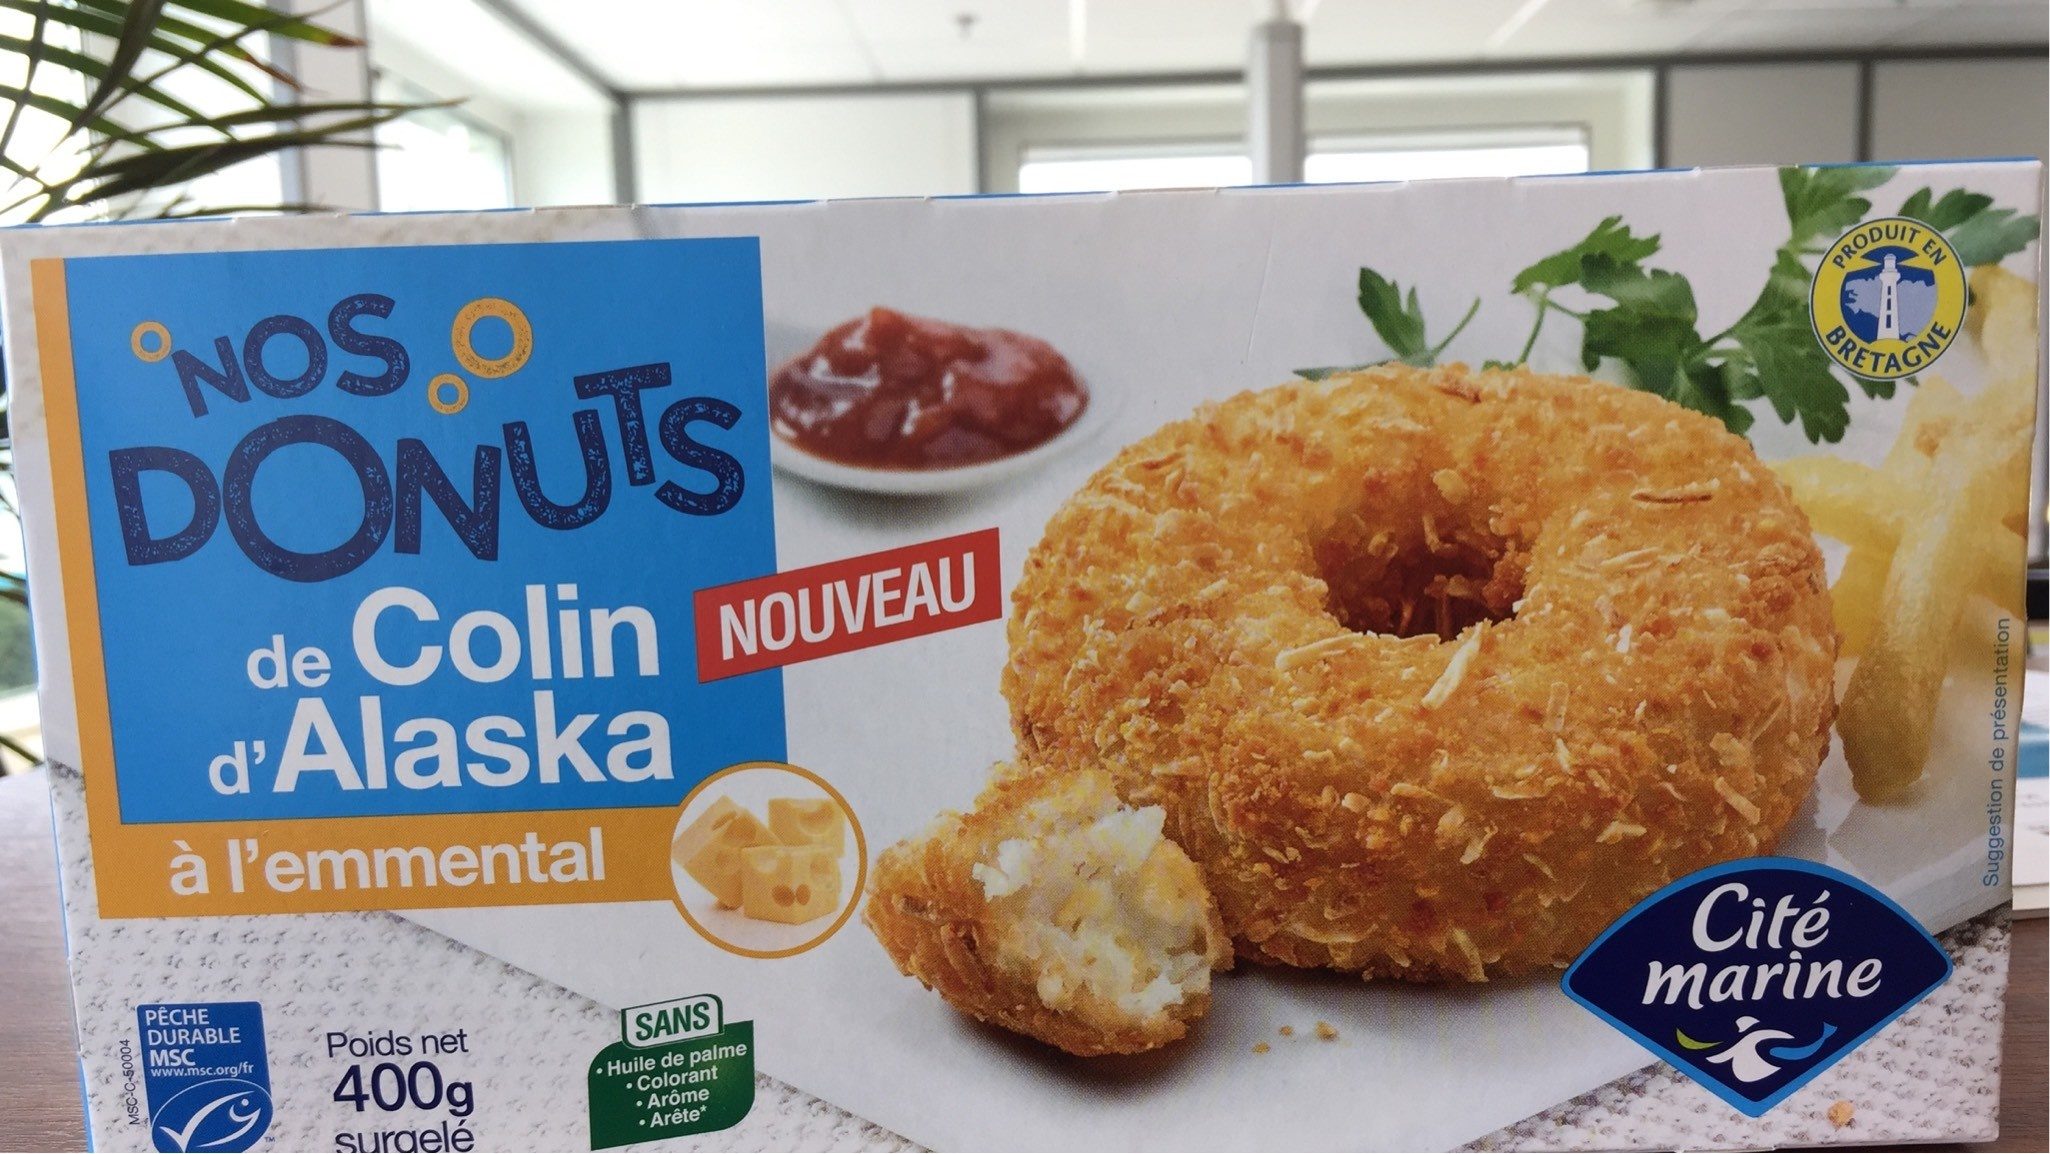 Donuts de colin d’alaska - Produit - fr